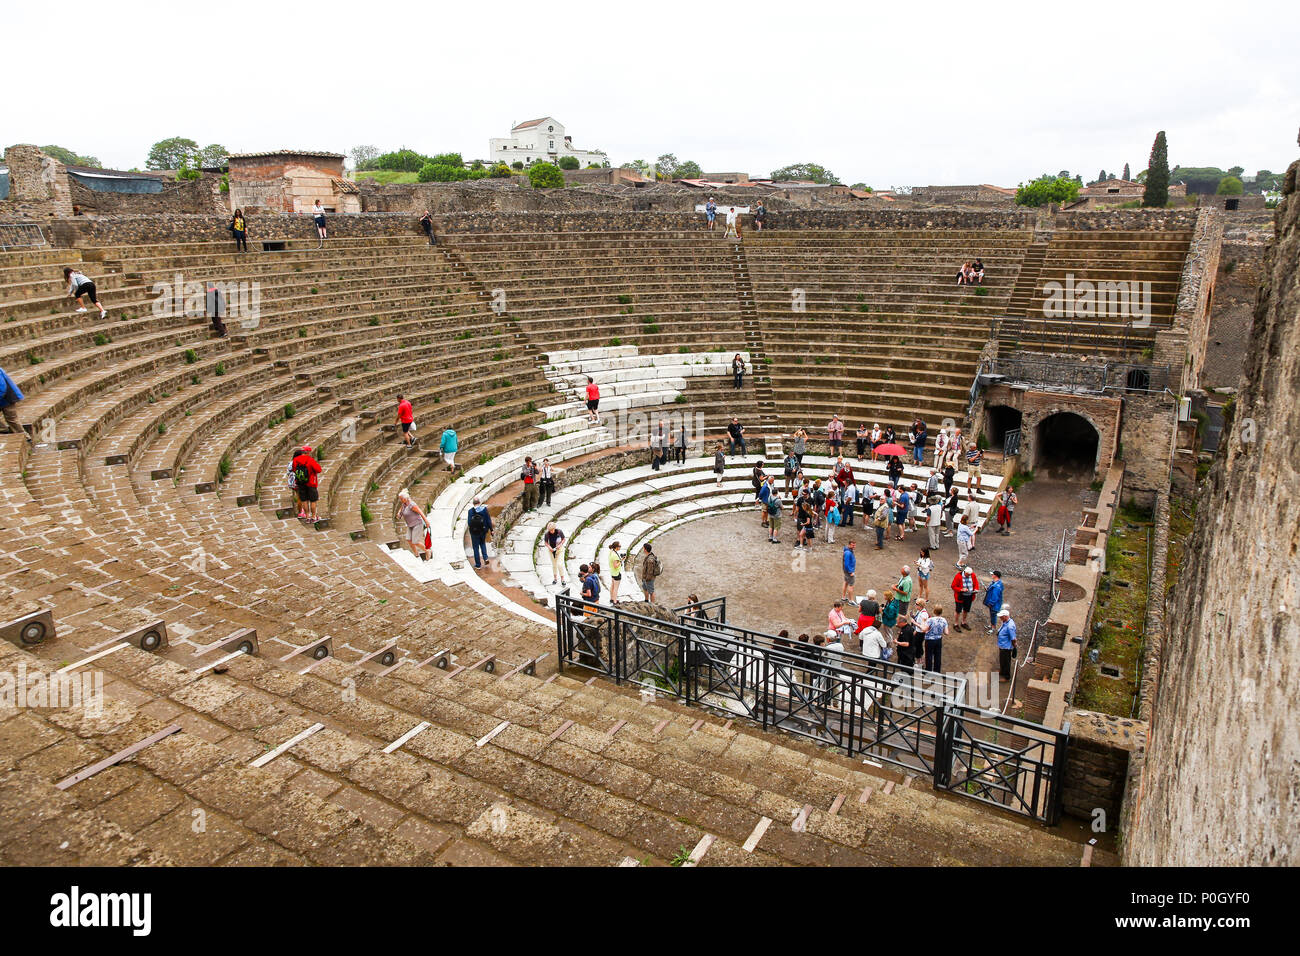 Touristen, die einem alten römischen Amphitheater, Pompeji Archäologische Stätte, Pompei, Kampanien, Italien, Stockfoto